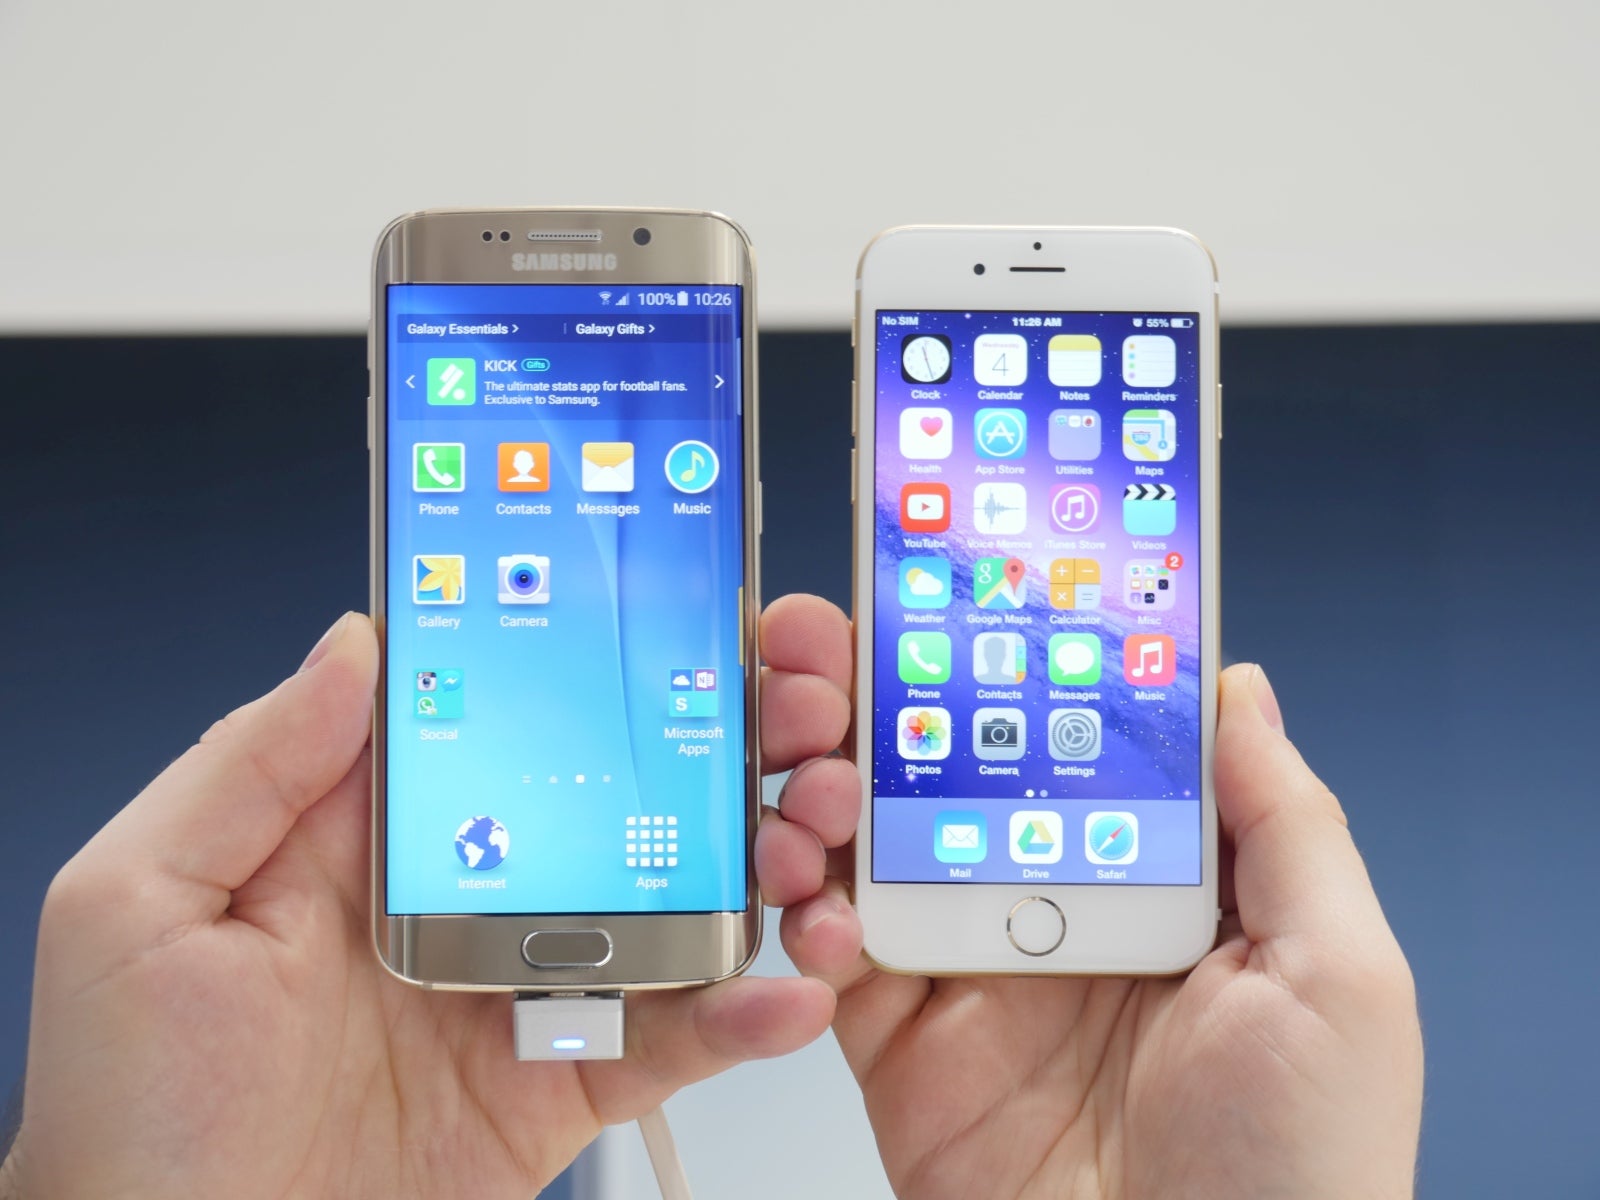 Самсунг 6 и 6 сравнение. Айфон 6 и самсунг s6. Iphone 6 Samsung s6. Samsung Galaxy s vs iphone 6s. Iphone s6 vs Amoled.